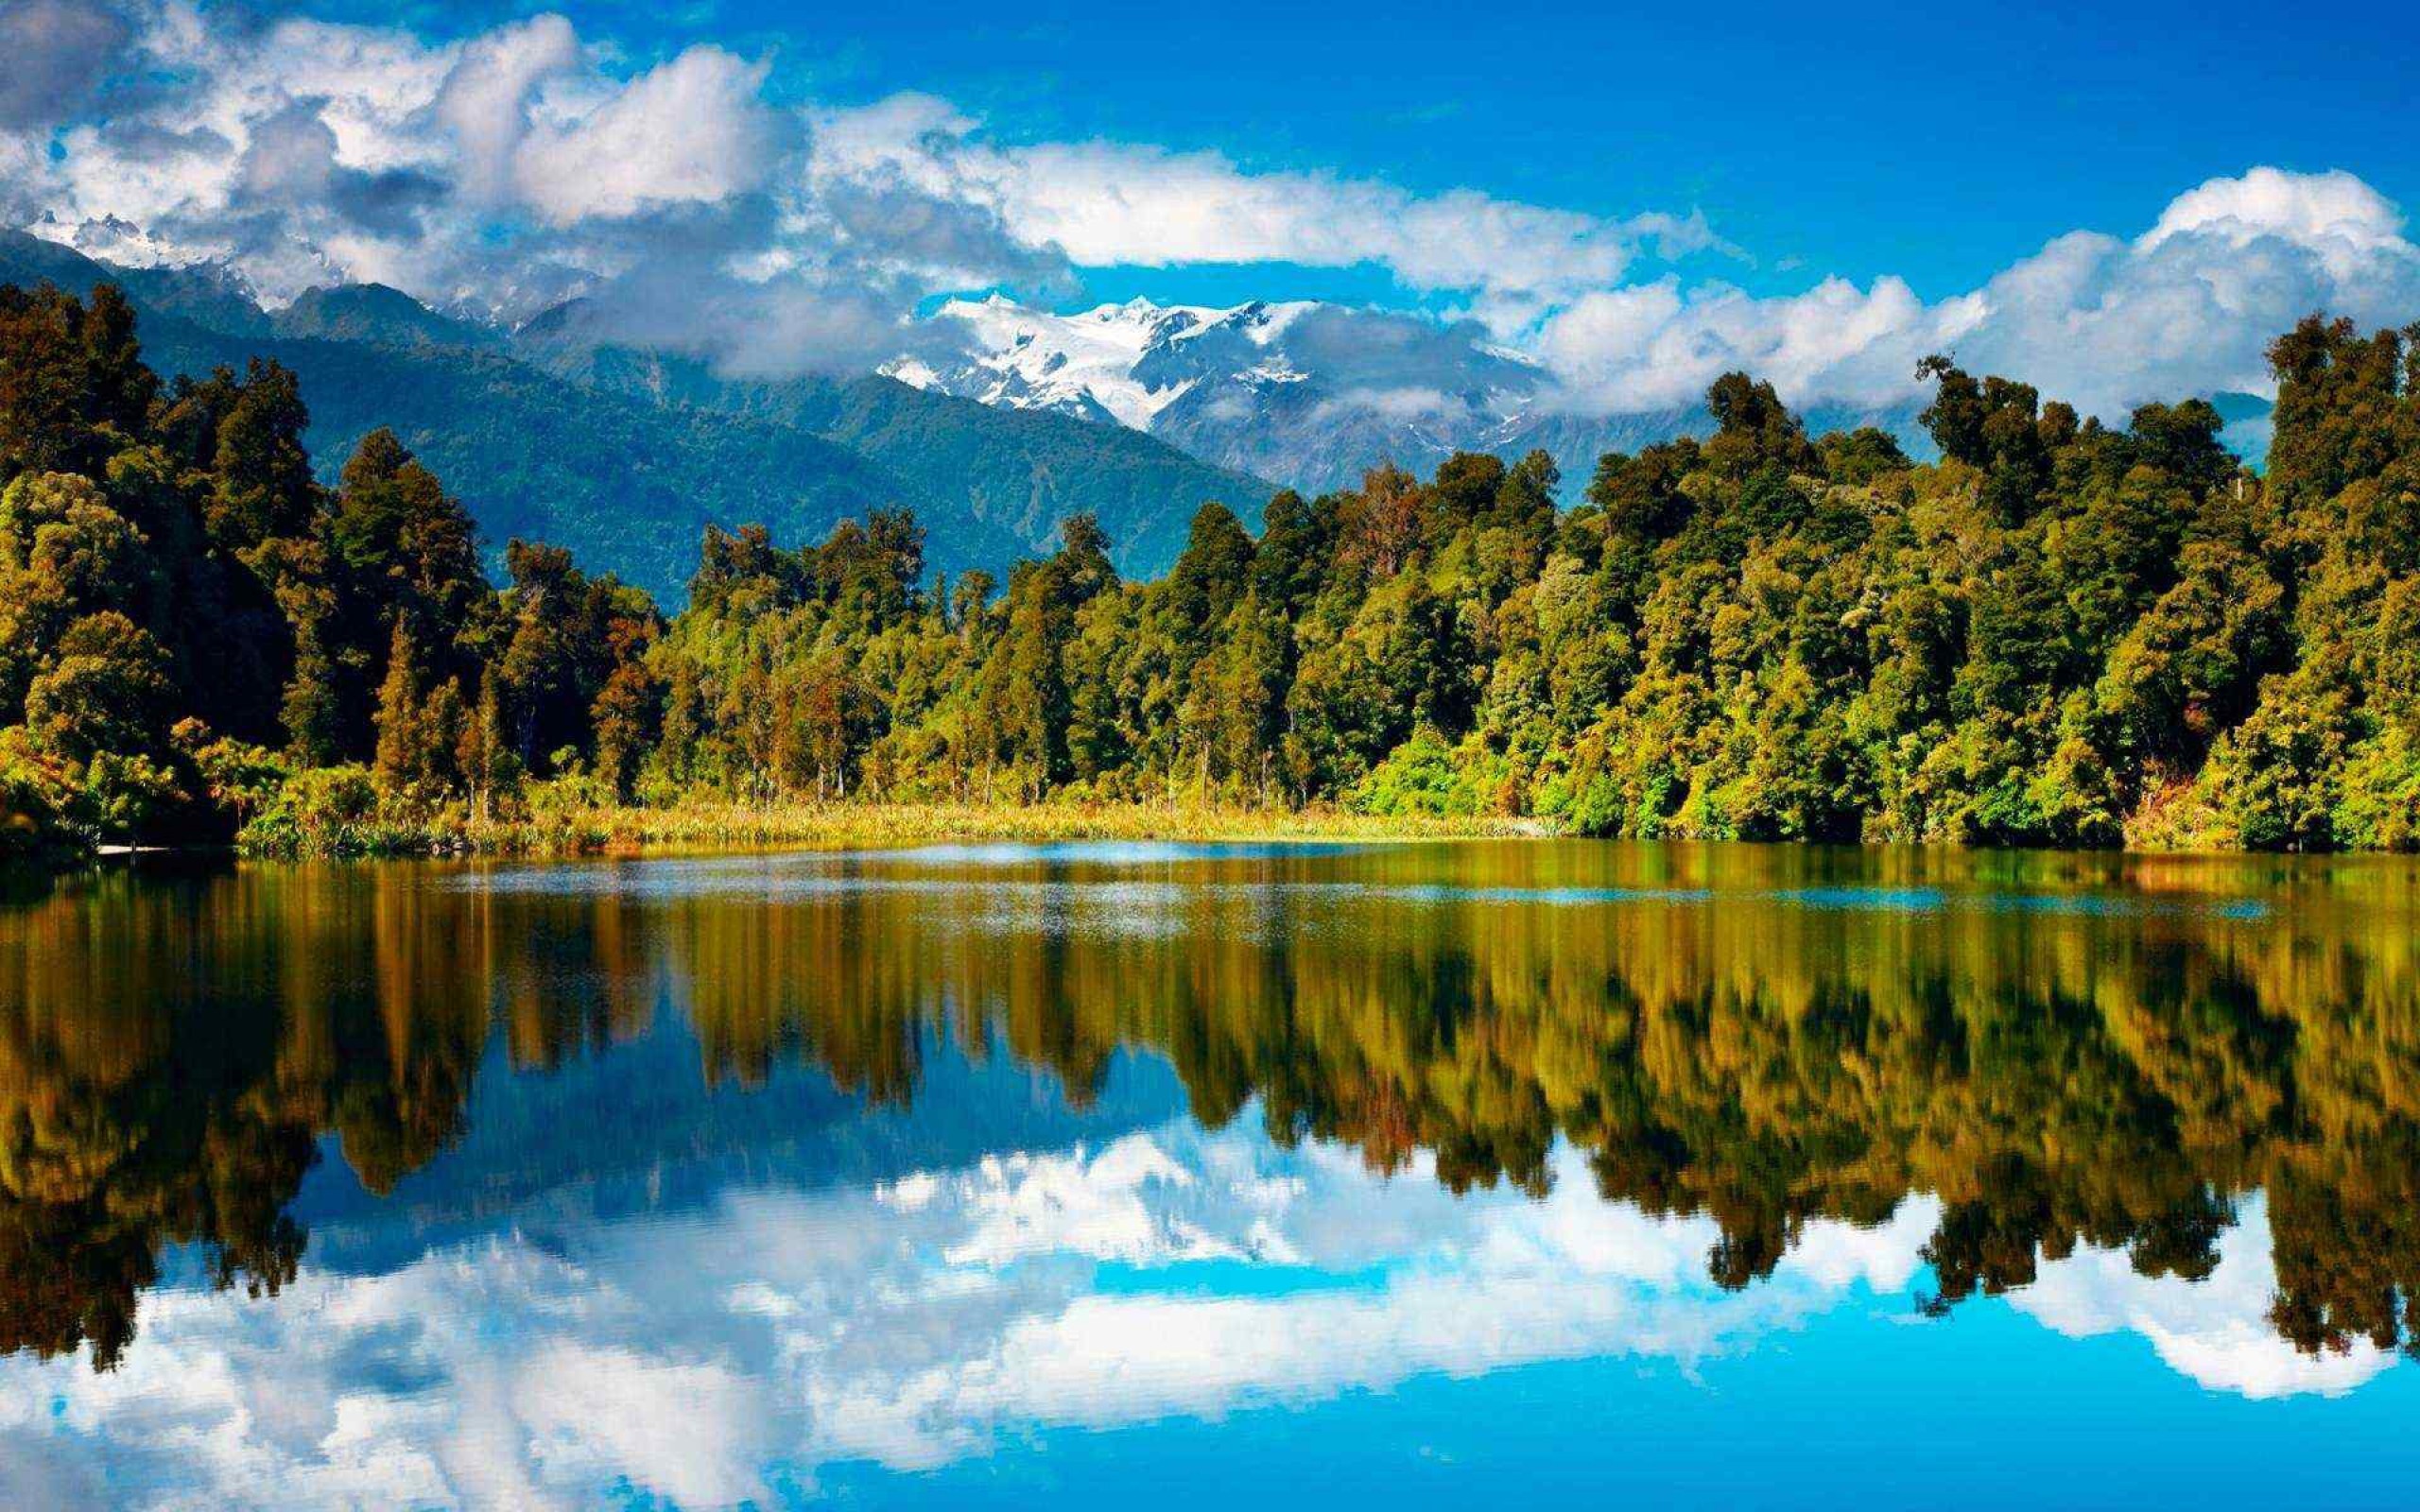 Картинка на обои высокого качества. Озеро Хавеа новая Зеландия. Природа. Пейзажи новой Зеландии. Озеро в лесу.